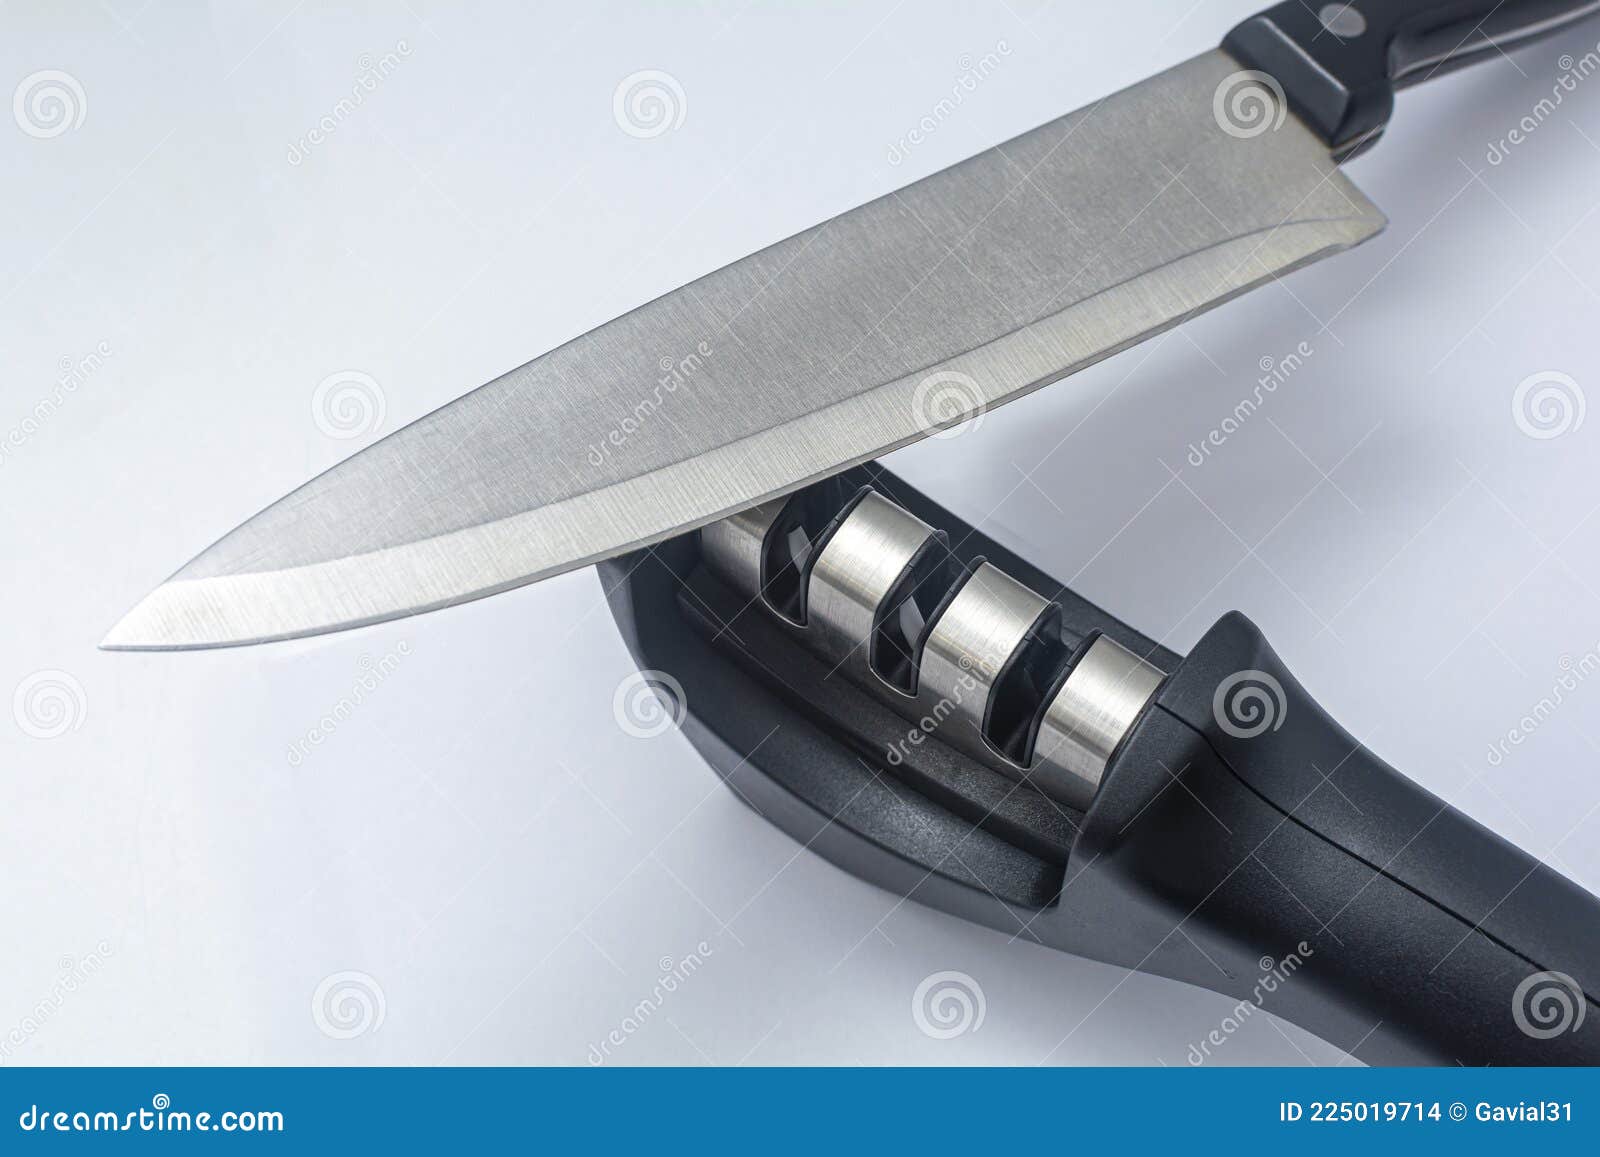 https://thumbs.dreamstime.com/z/knife-fillet-knife-reversible-manual-knife-sharpener-items-white-background-knife-fillet-knife-reversible-manual-225019714.jpg